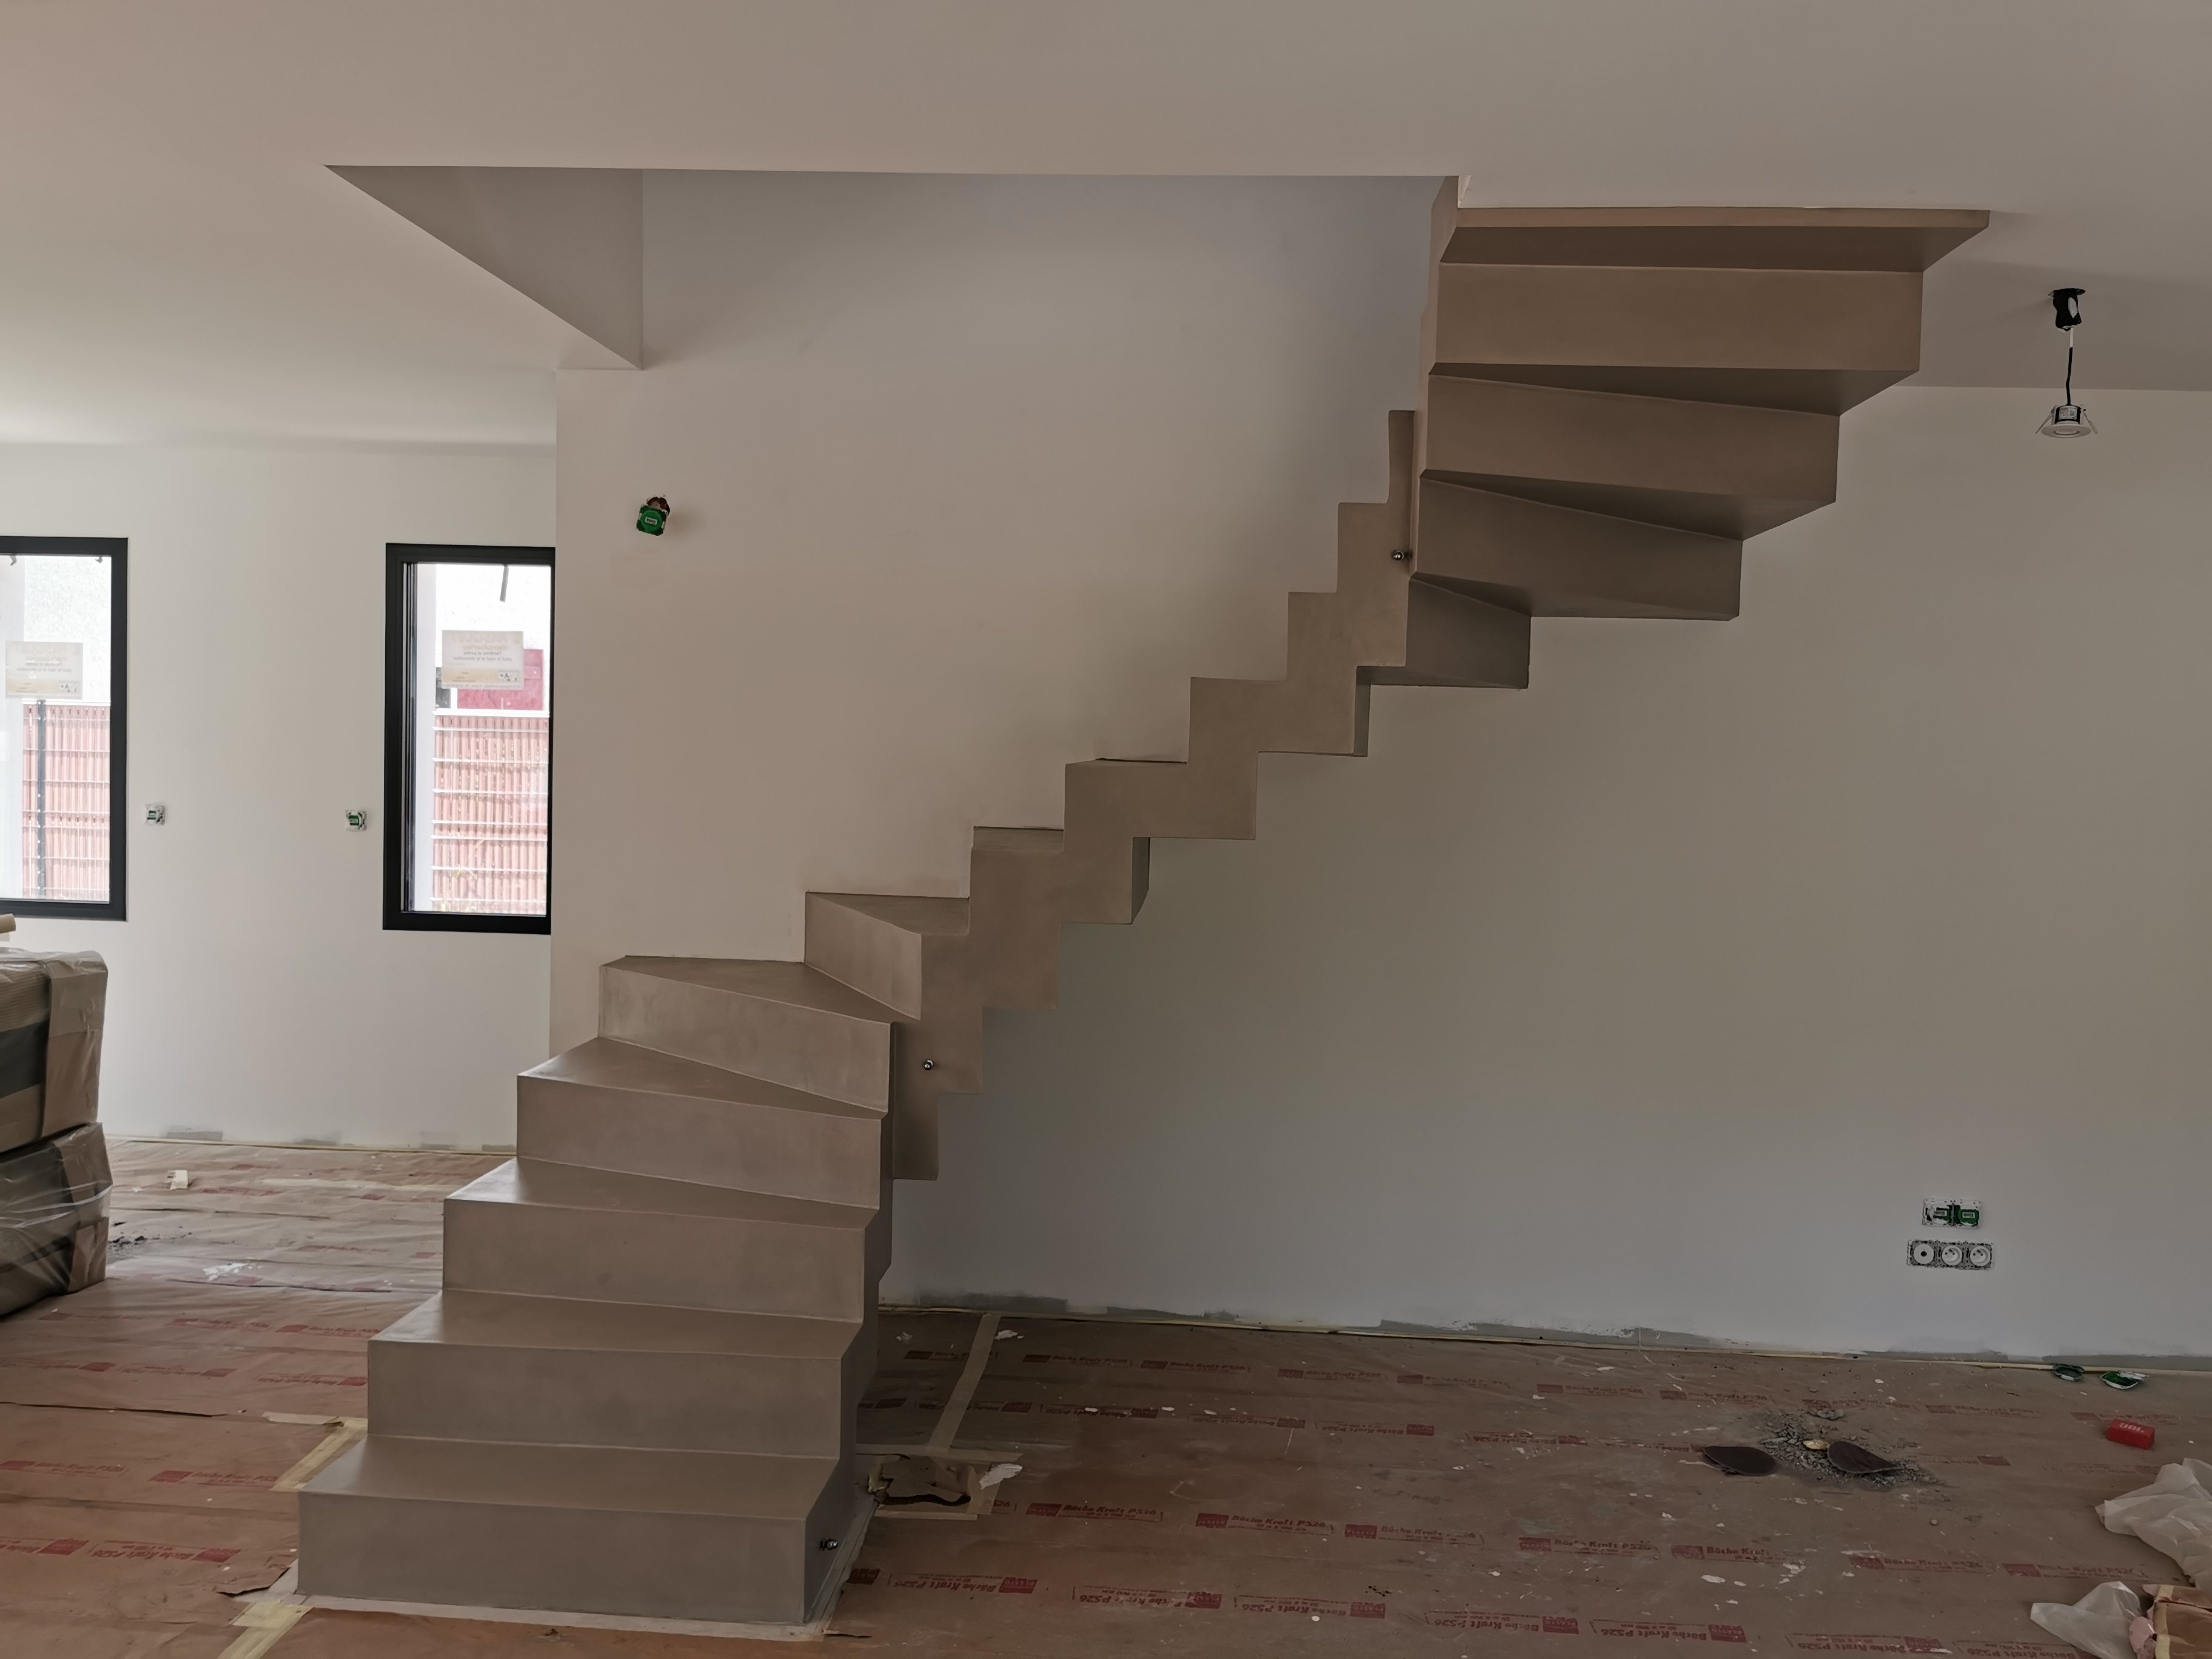 remarquable escalier crémaillère contemporain en béton ciré vernis mat couleur galet original La Teste-de-Buch Arcachon pour un particulier